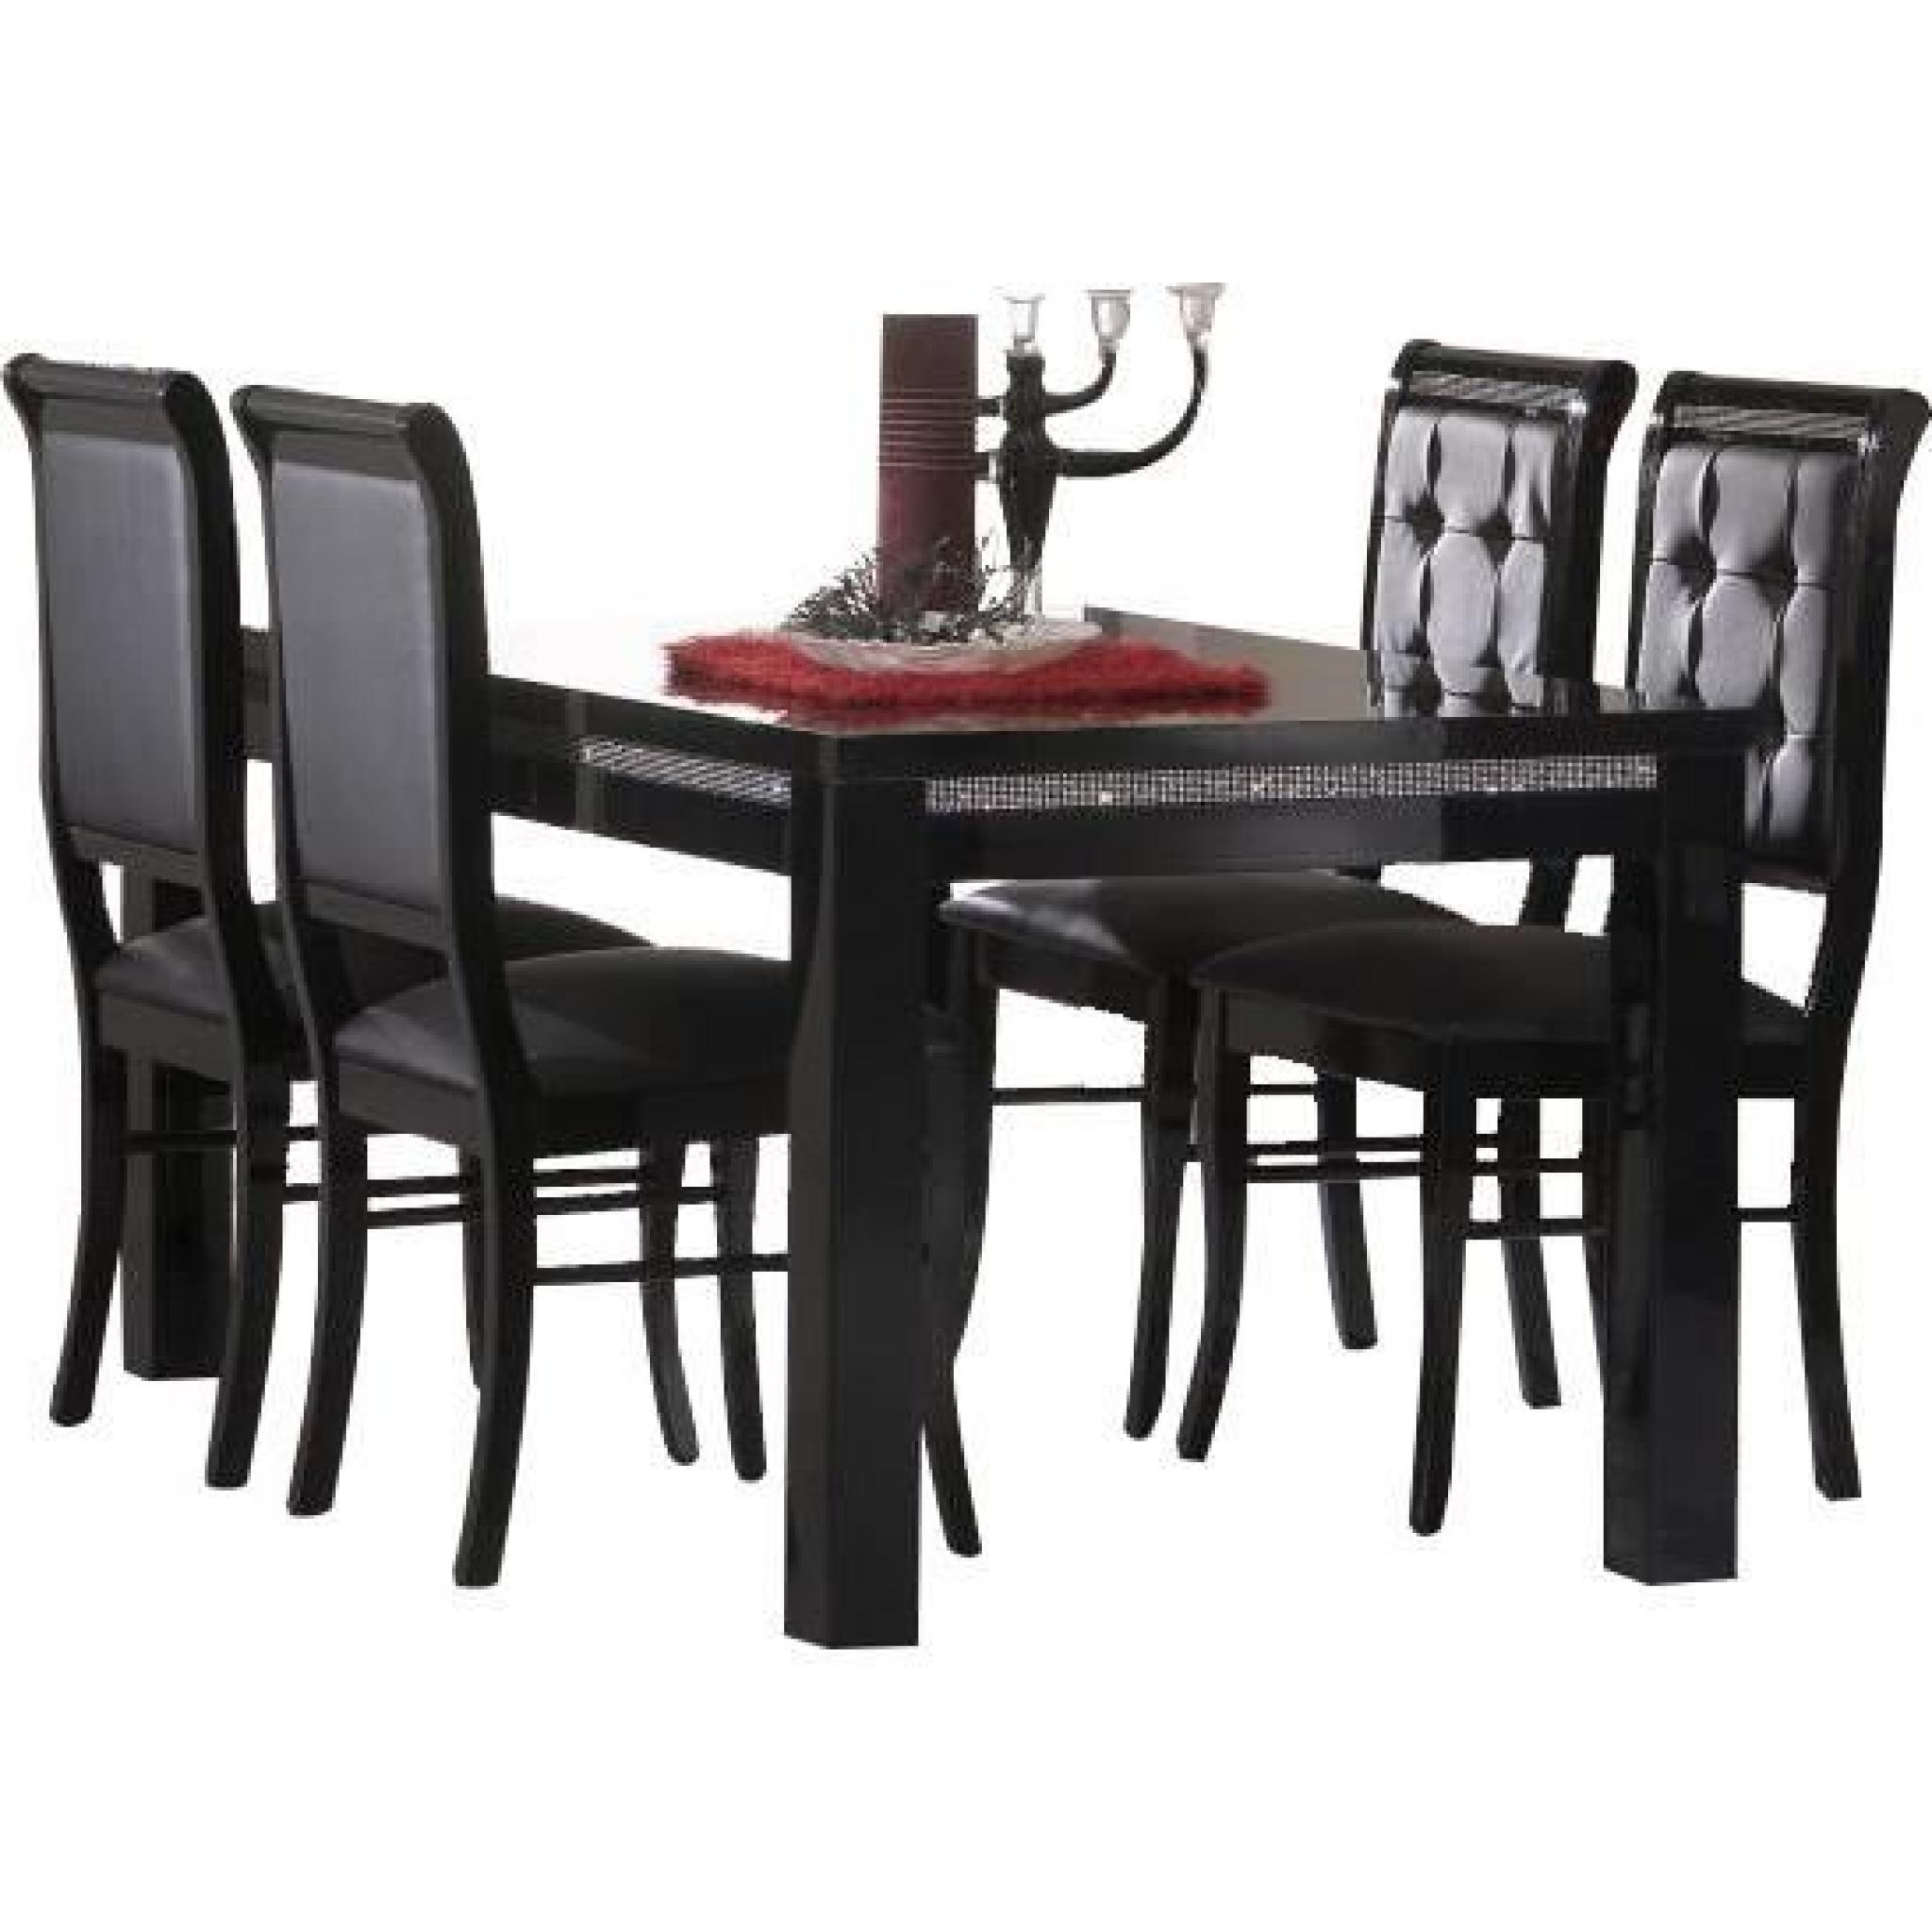 Table à manger 190 cm noir + 4 chaises ultra design noir